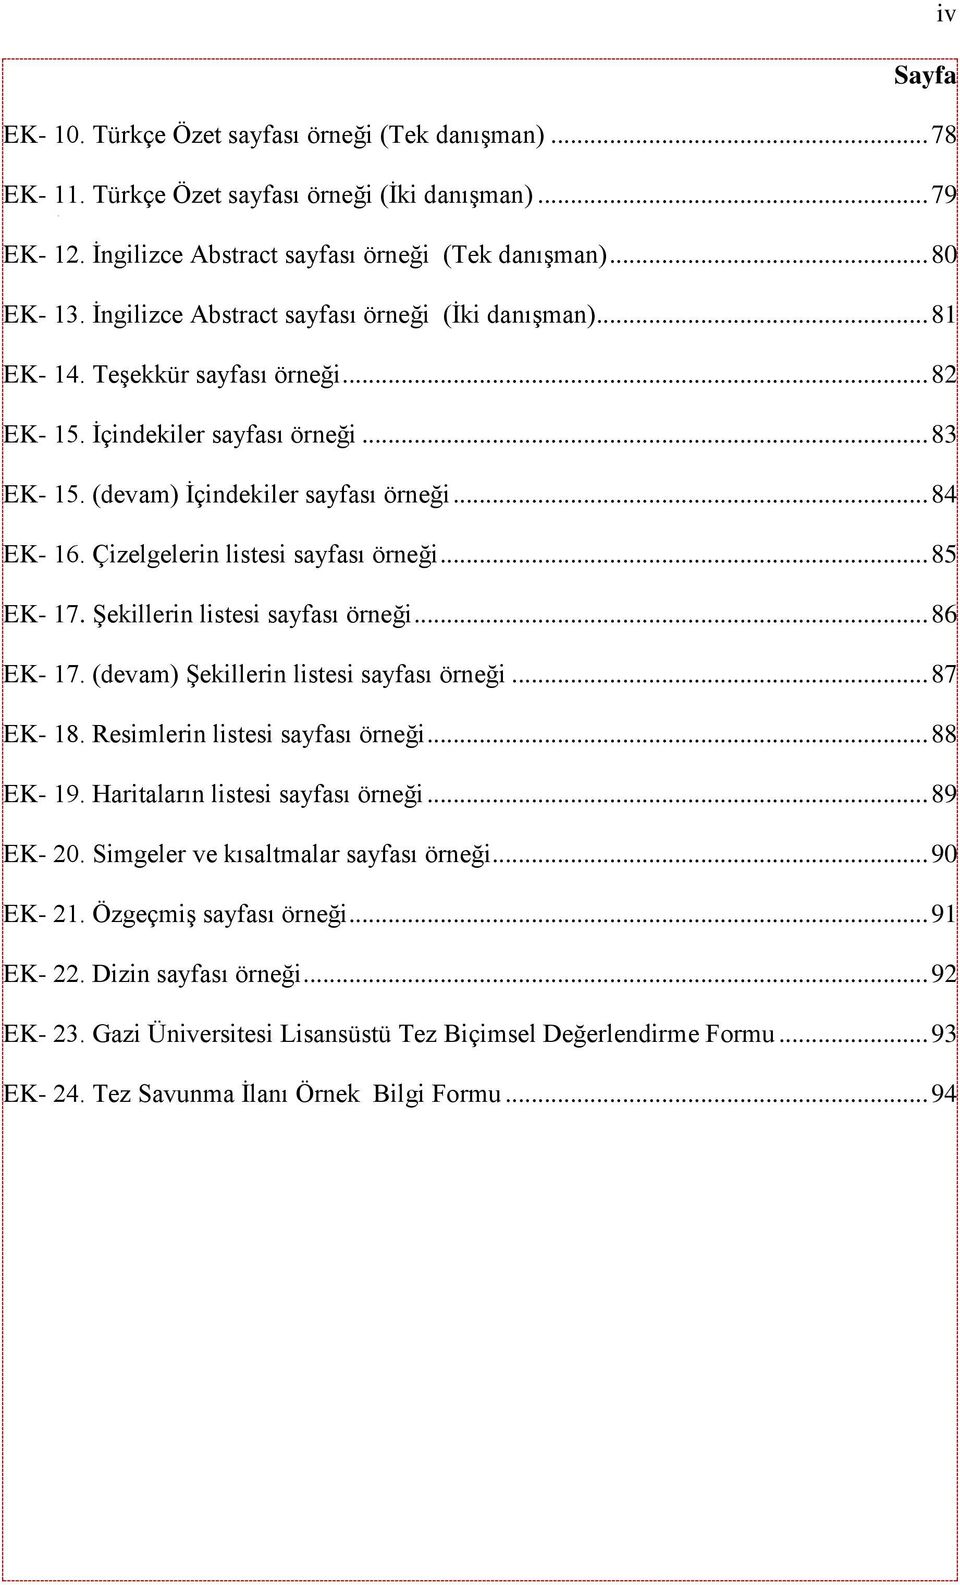 Çizelgelerin listesi sayfası örneği... 85 EK- 17. Şekillerin listesi sayfası örneği... 86 EK- 17. (devam) Şekillerin listesi sayfası örneği... 87 EK- 18. Resimlerin listesi sayfası örneği... 88 EK- 19.